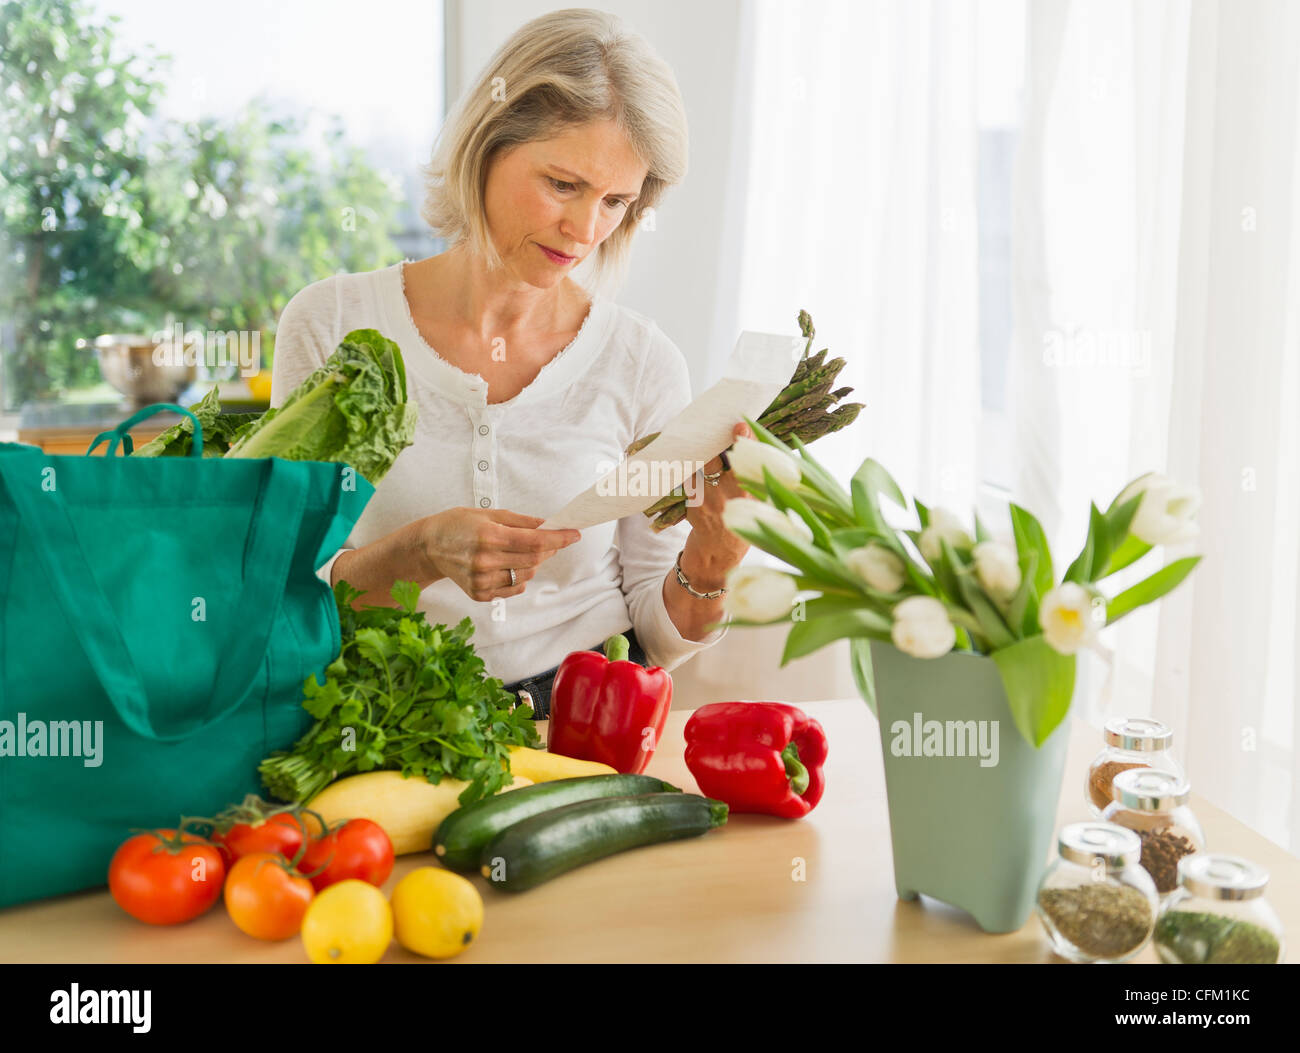 Stati Uniti d'America, New Jersey, Jersey City, ritratto di donna senior con shopping bag in cucina Foto Stock